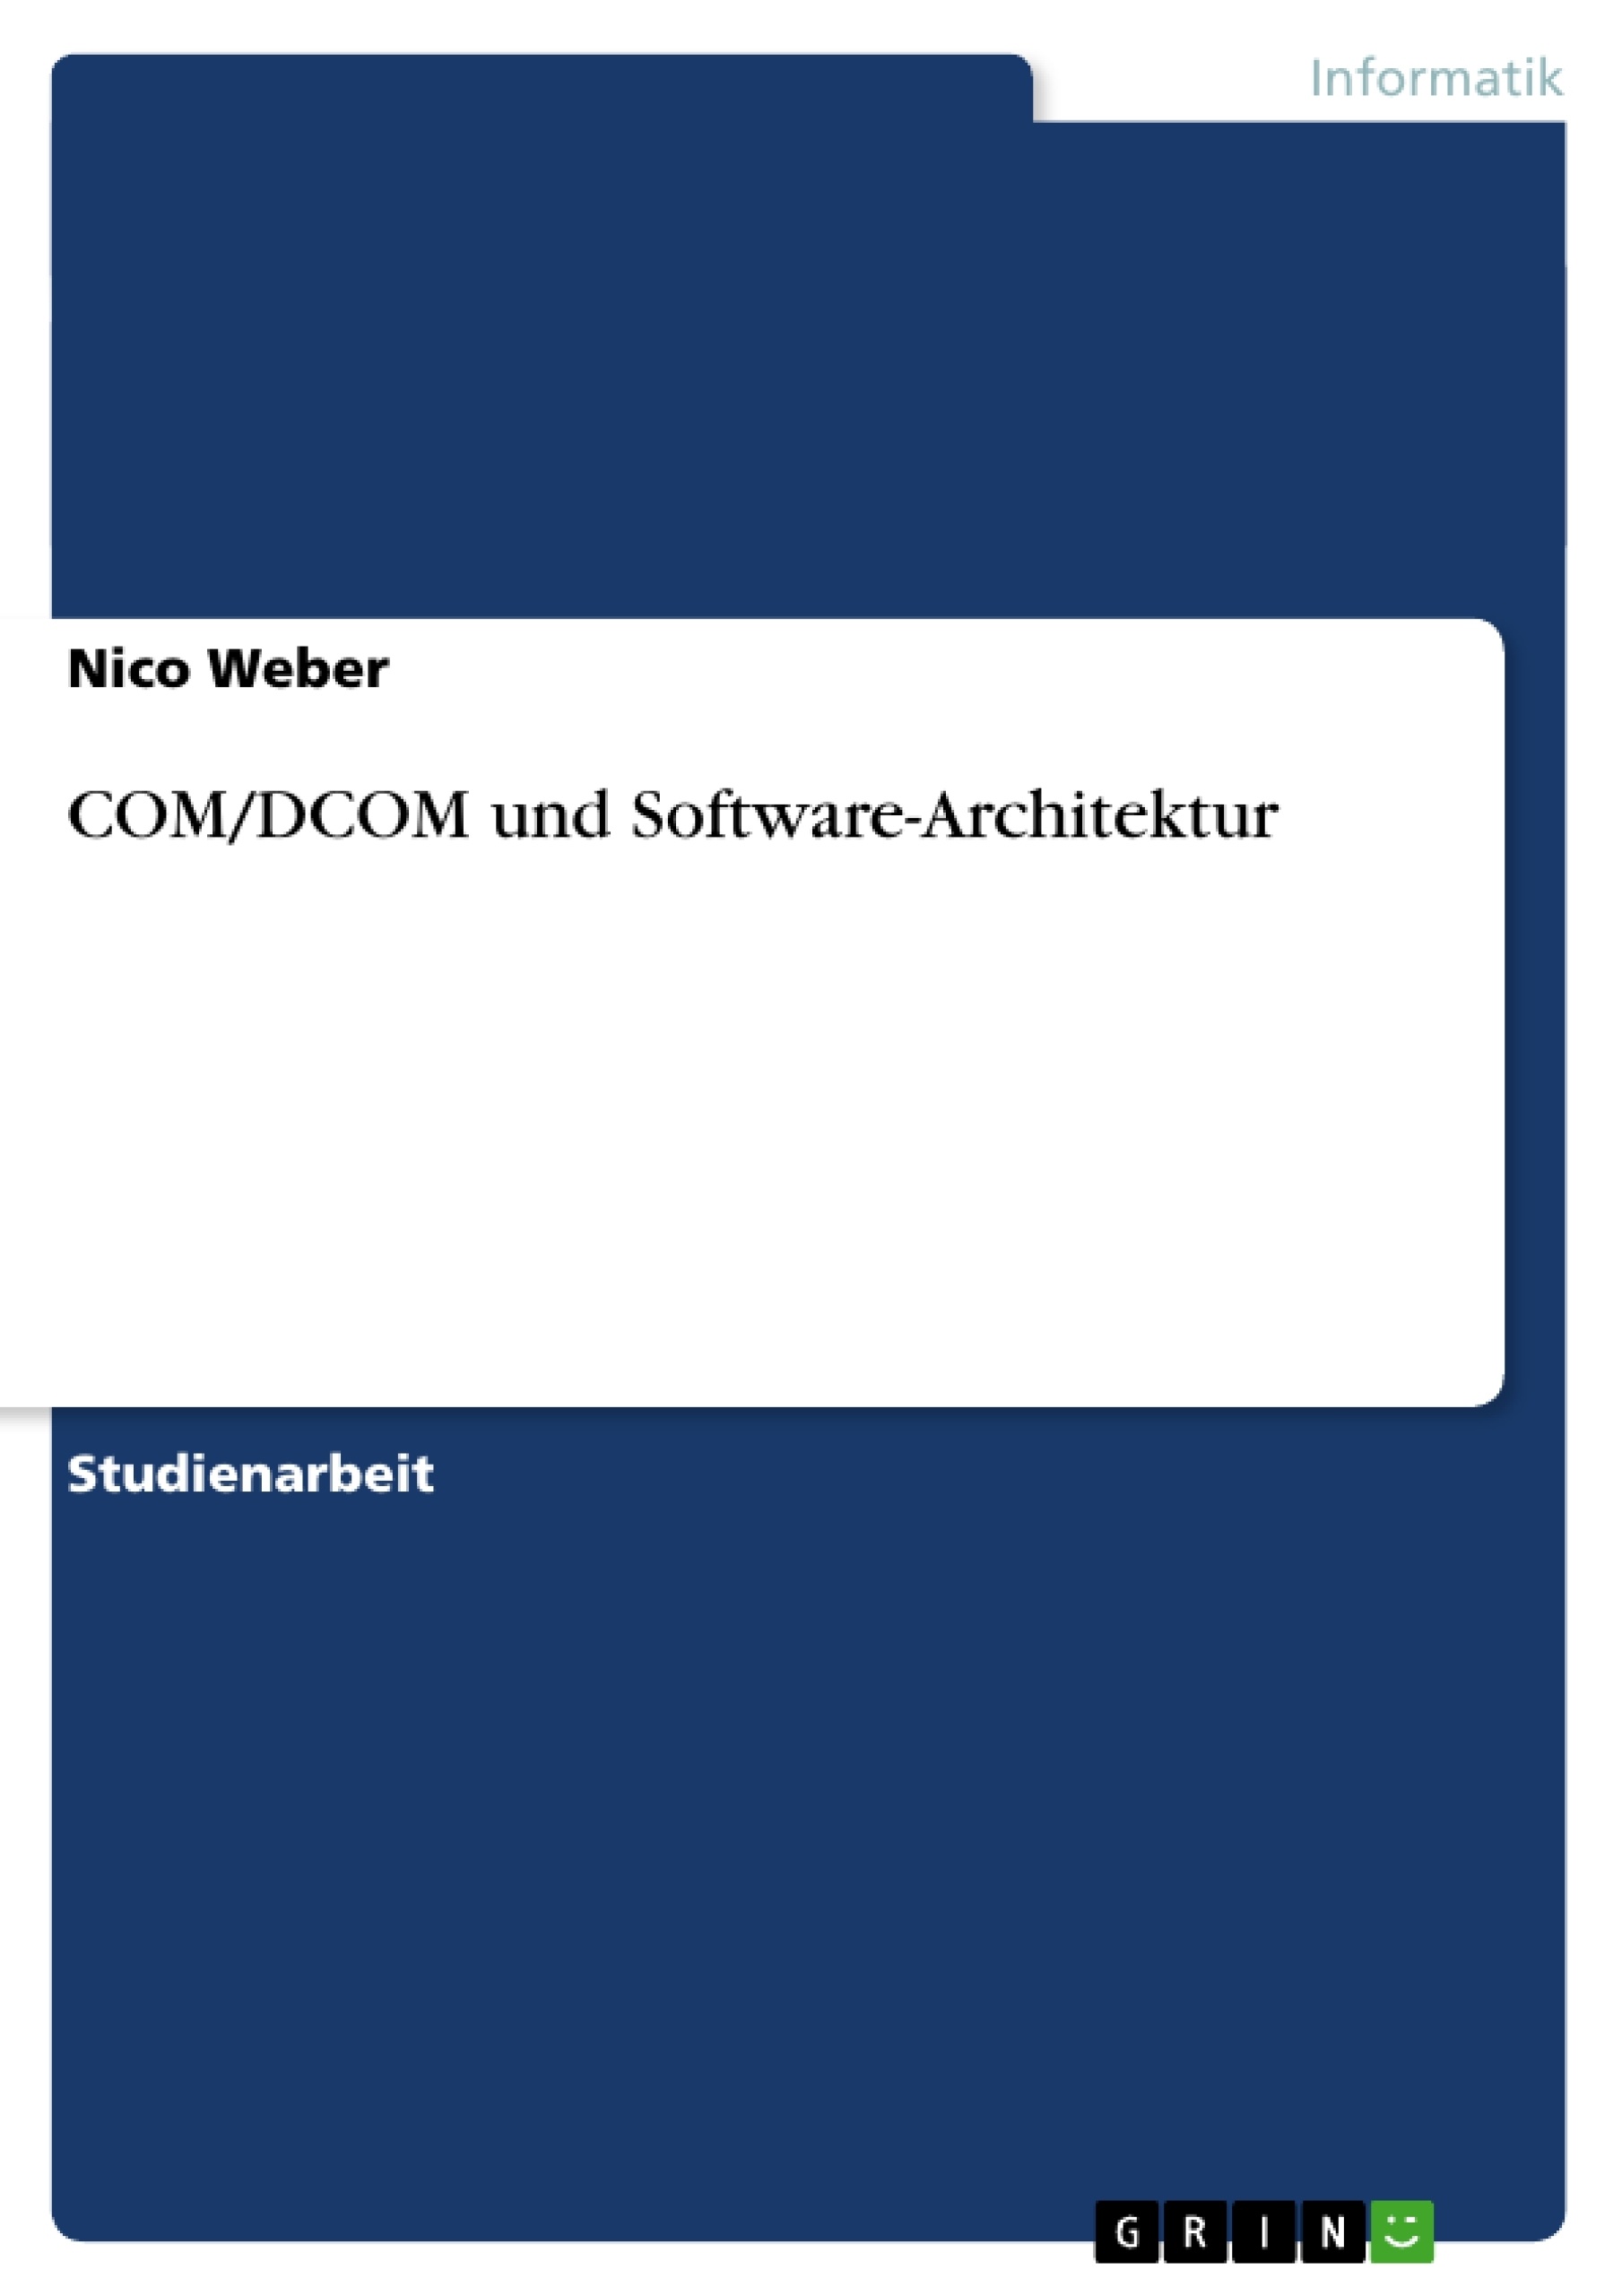 Título: COM/DCOM und Software-Architektur